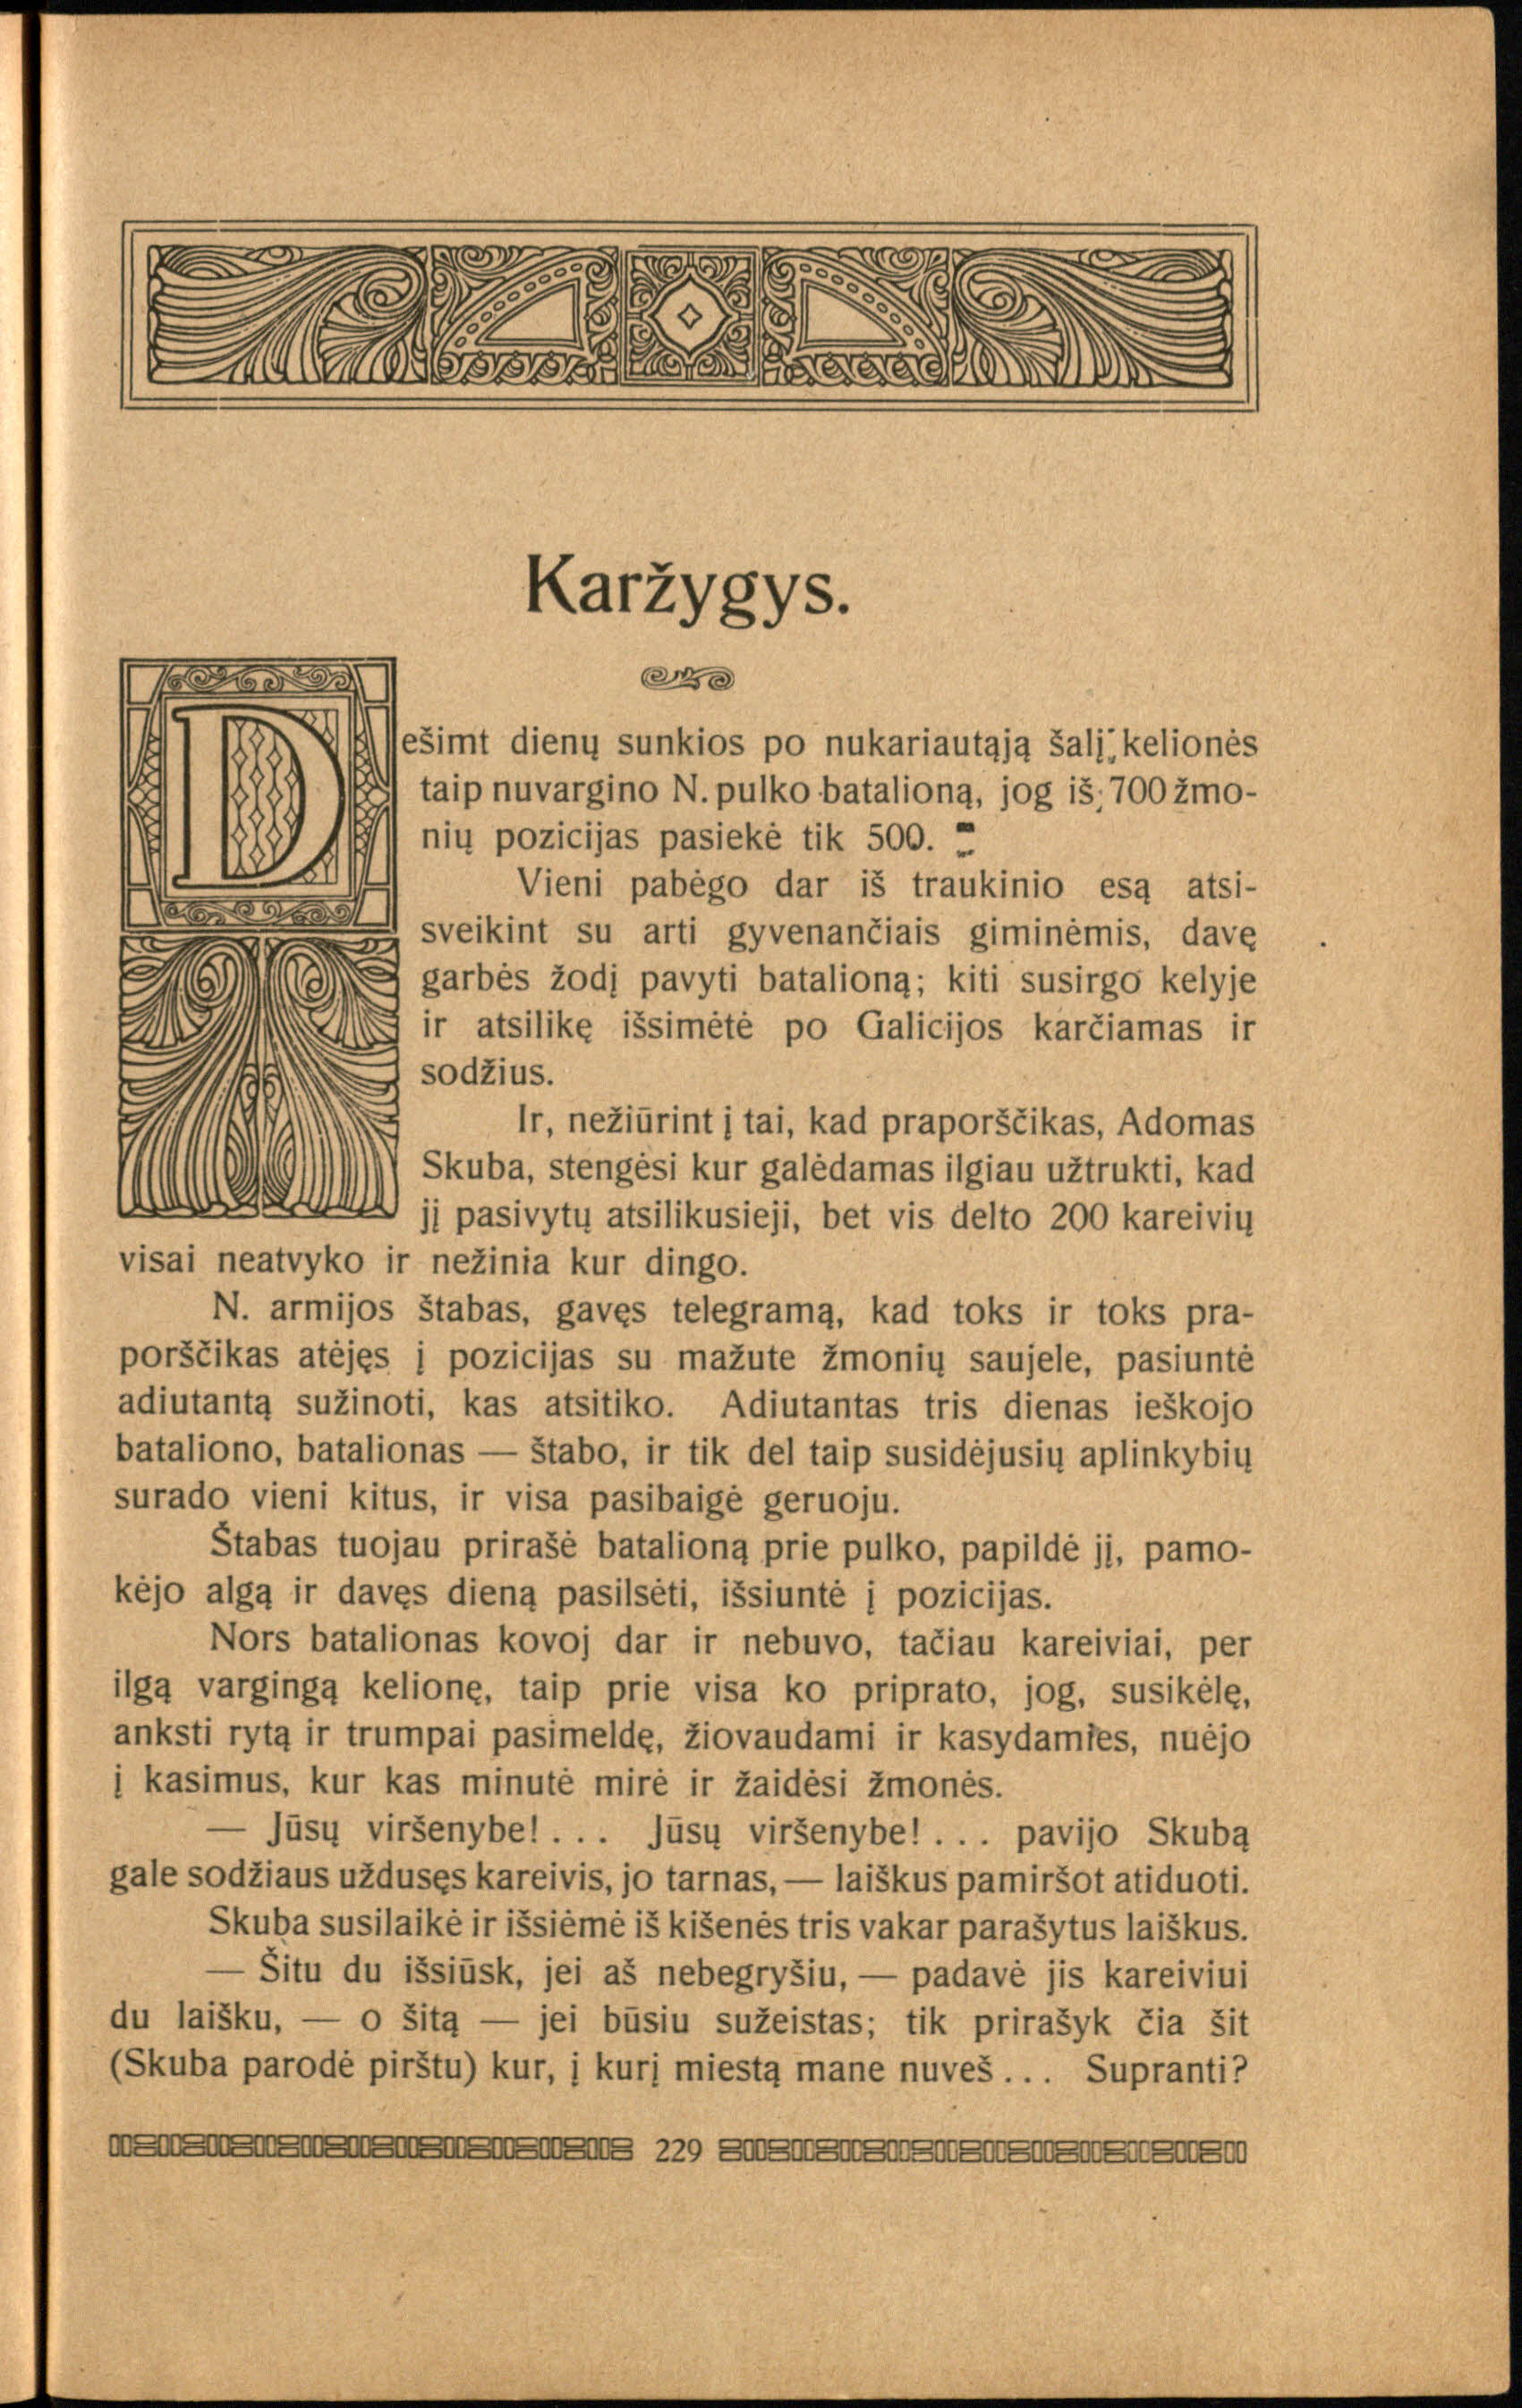 Vienuolis, Antanas. Raštai. Kaunas, [1920], kn. 1, p. 229.